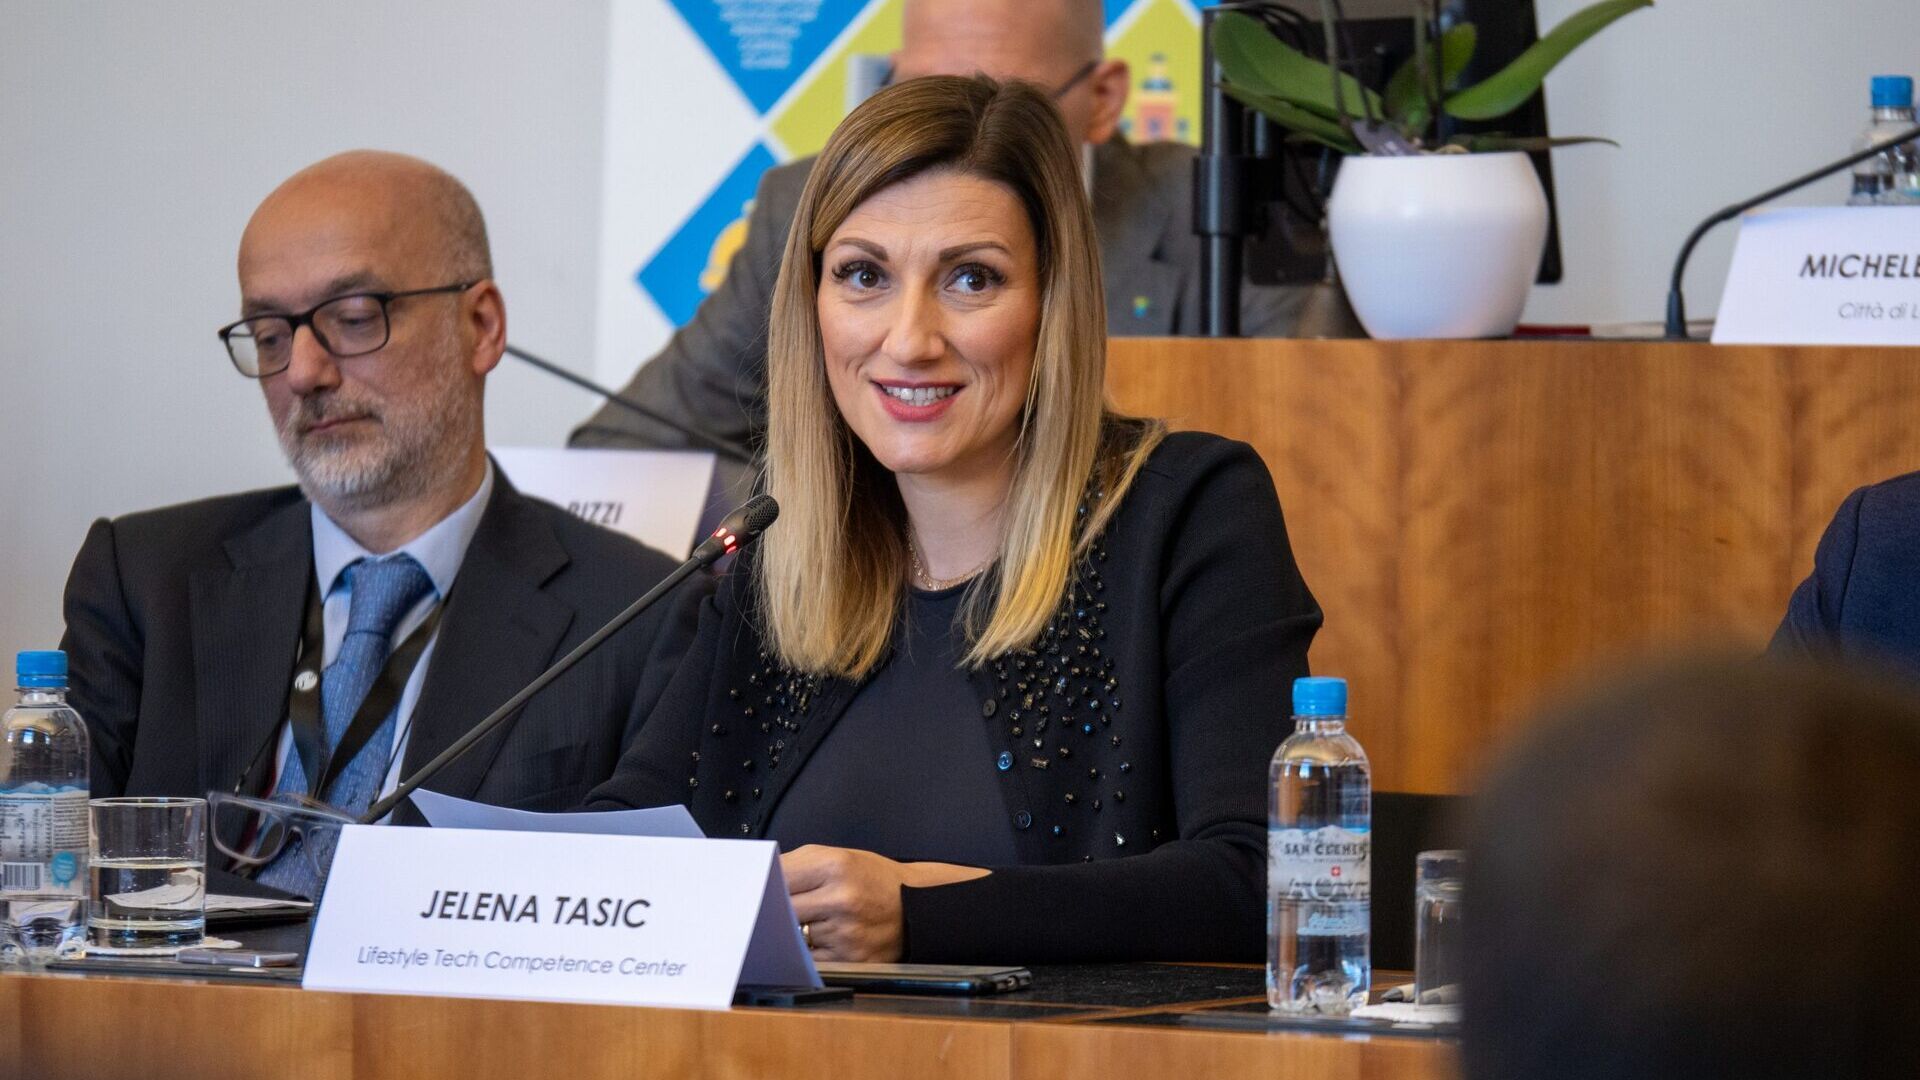 LTCC: Jelena Tašić Pizzolato är VD för Lifestyle Tech Competence Center Association